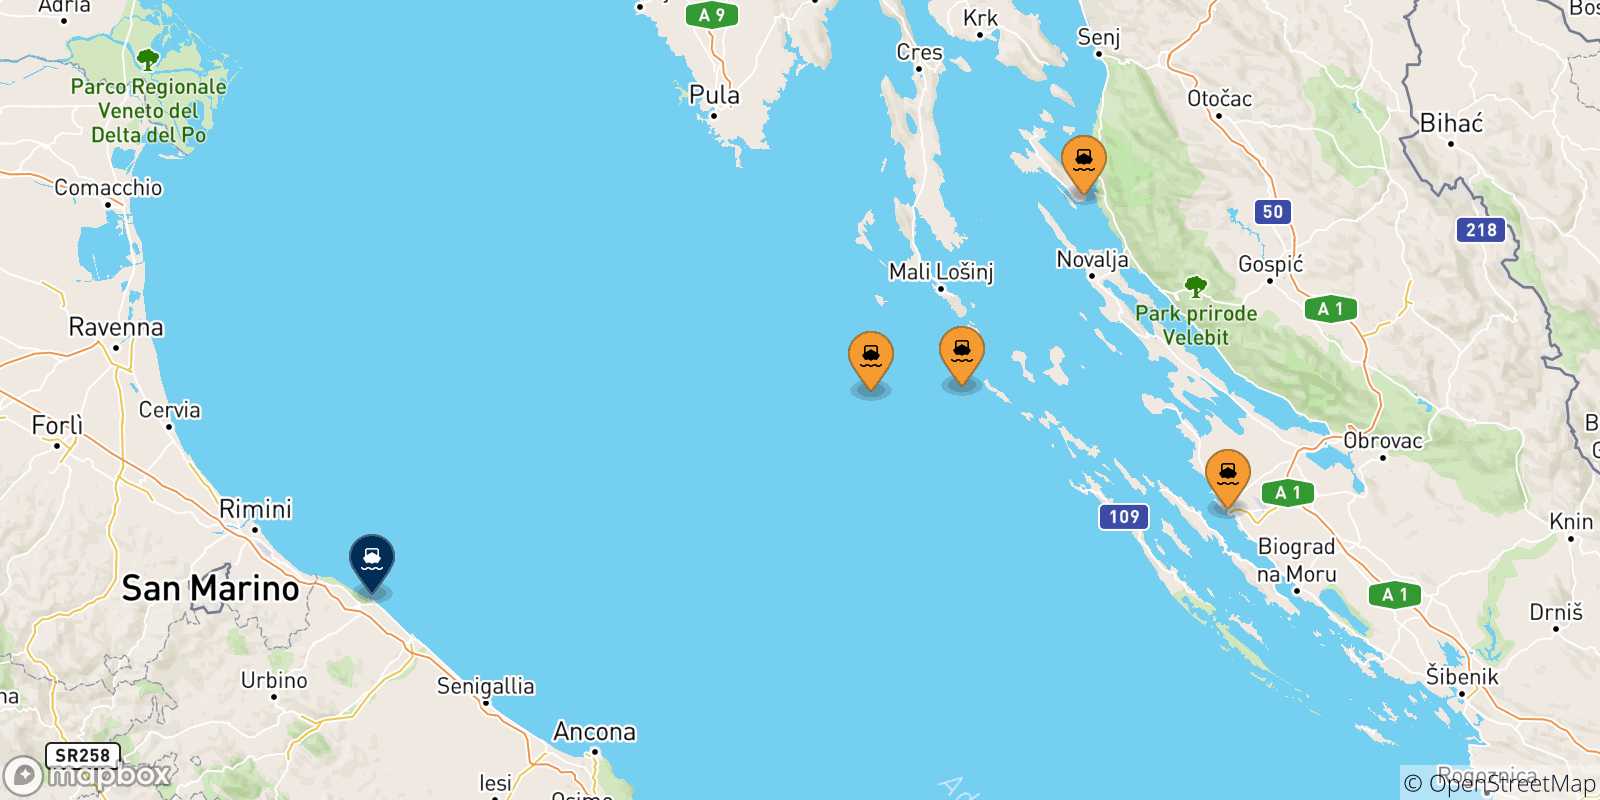 Mappa delle possibili rotte tra la Croazia e Pesaro